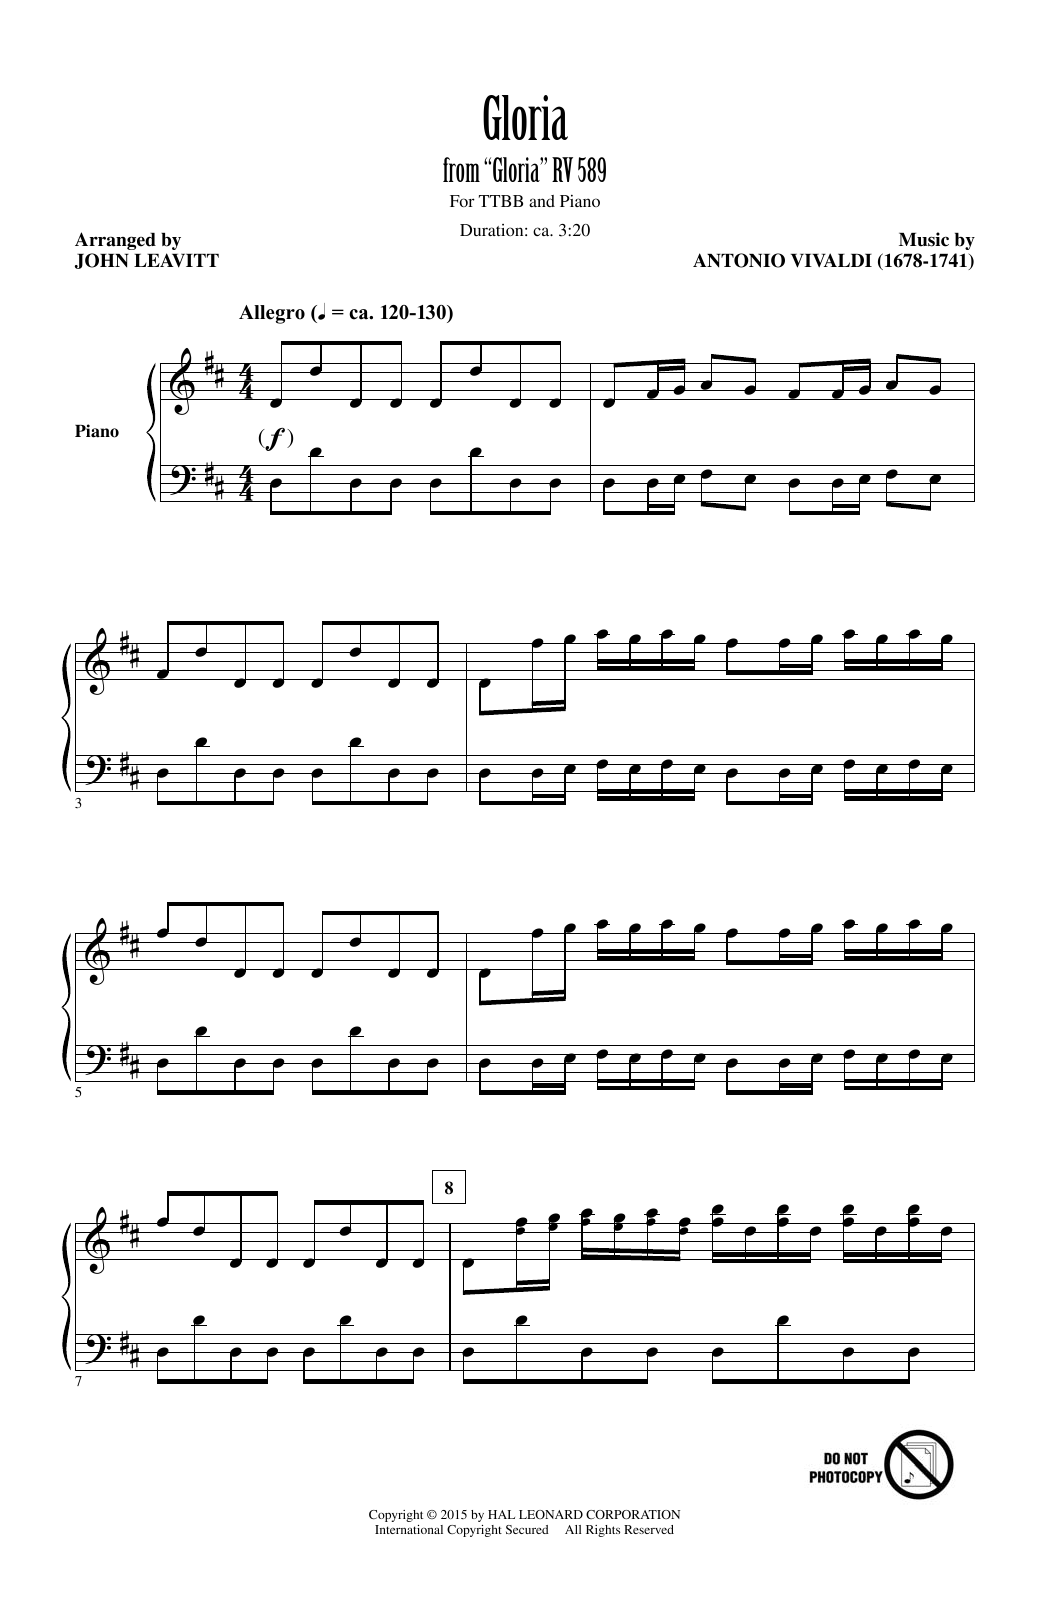 Antonio Vivaldi Gloria In Excelsis (Arr. John Leavitt) Sheet Music Notes & Chords for TTBB - Download or Print PDF